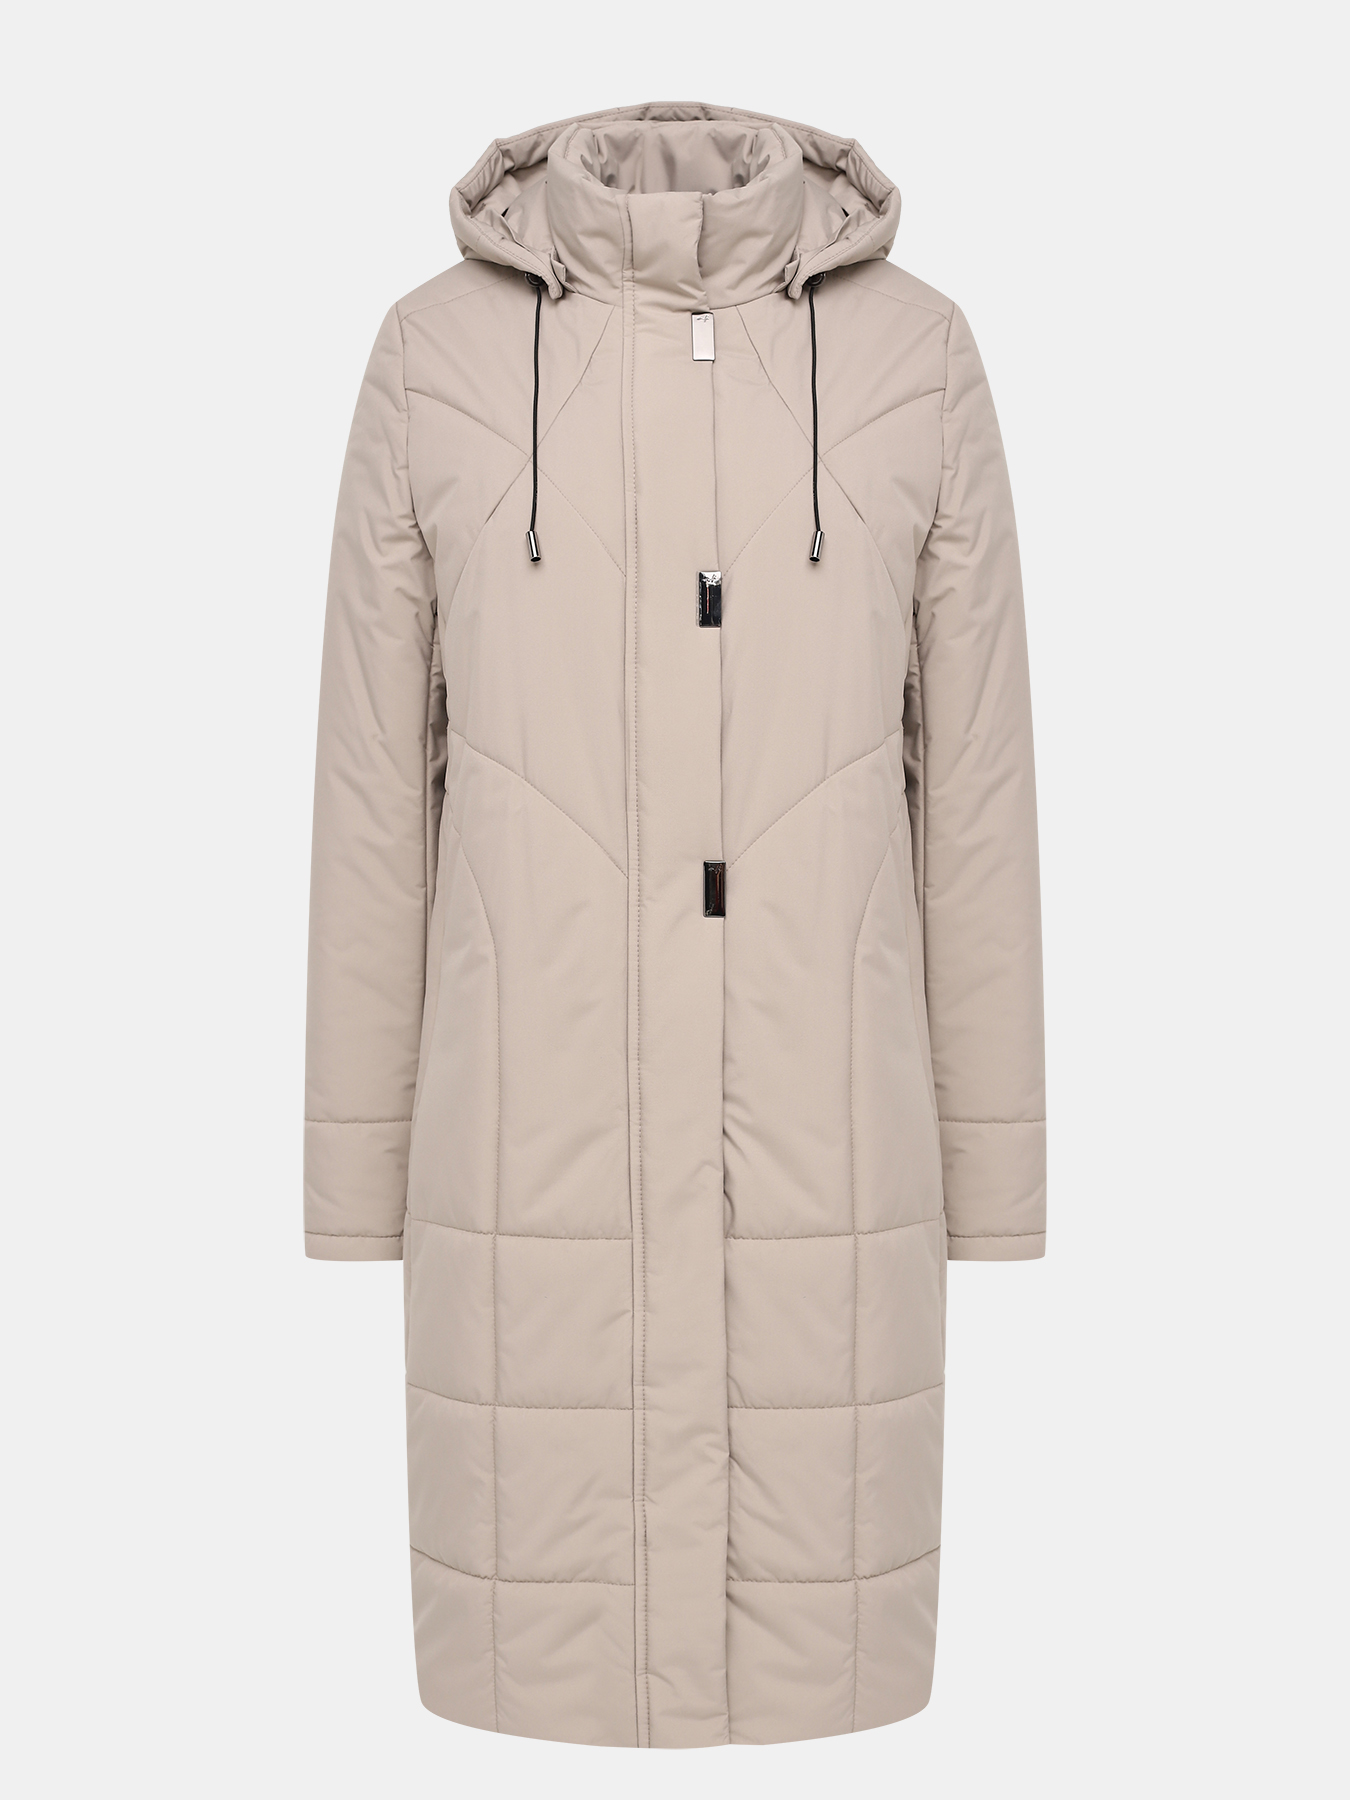 Пальто зимнее Maritta 433644-022, цвет бежевый, размер 48